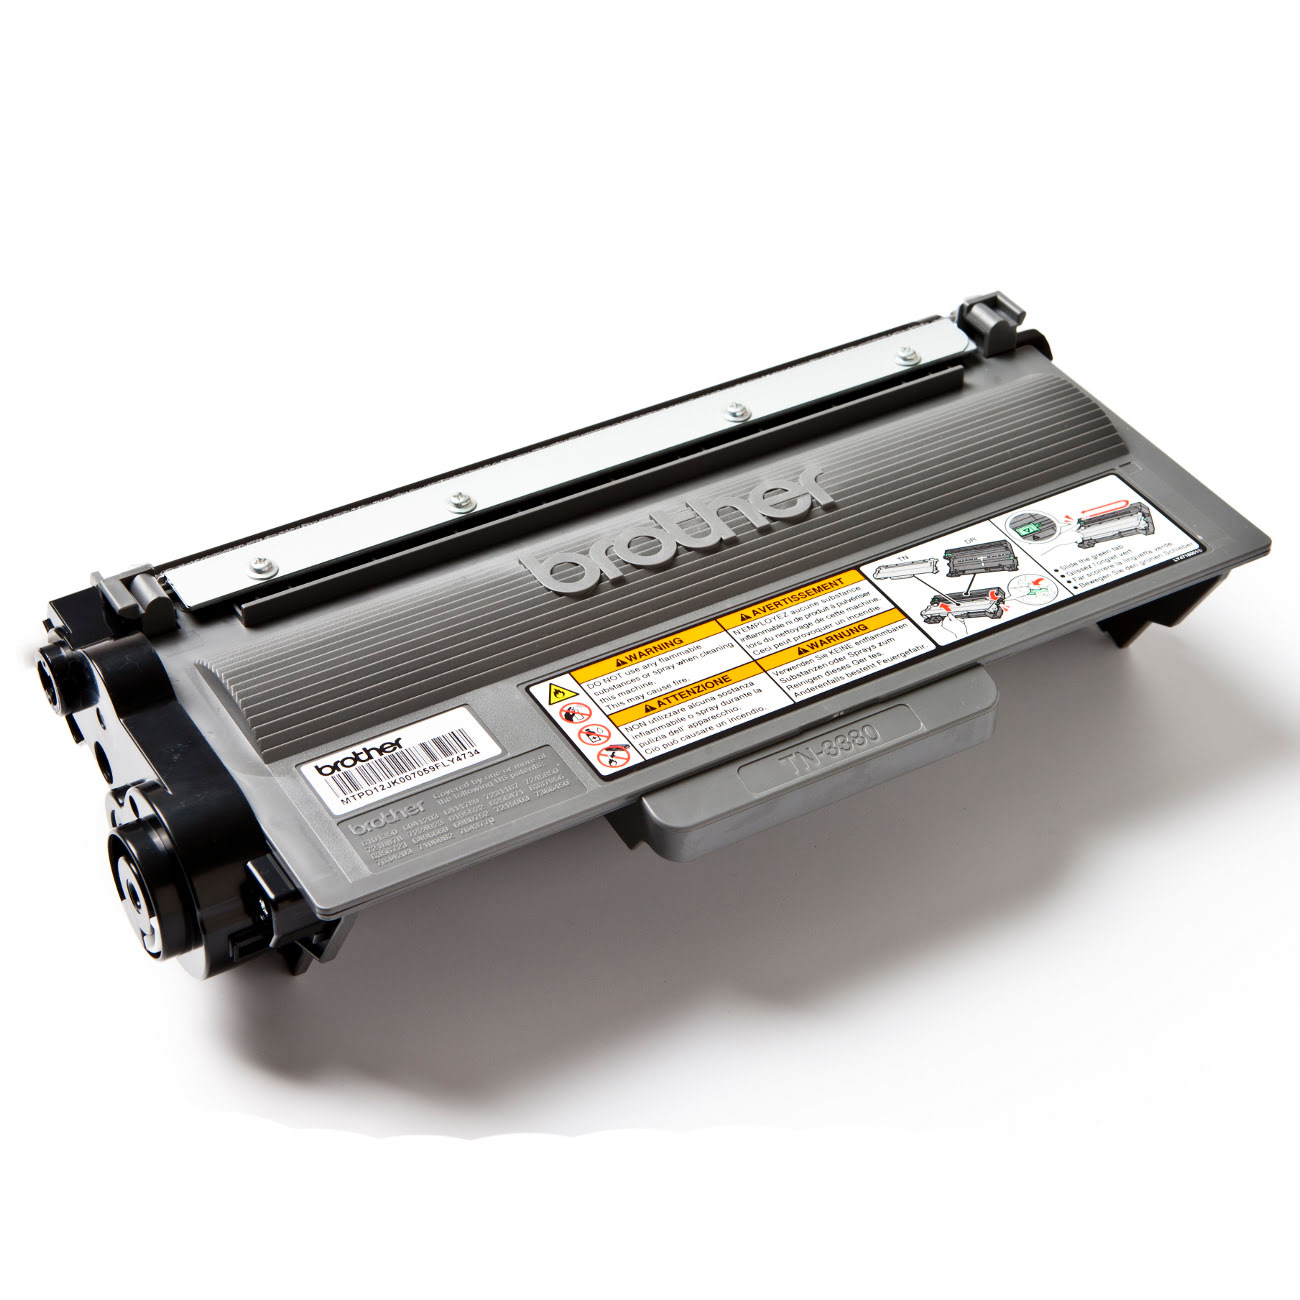 Toner Noir 12K Pages - TN-3390 pour imprimante Laser Brother - 0